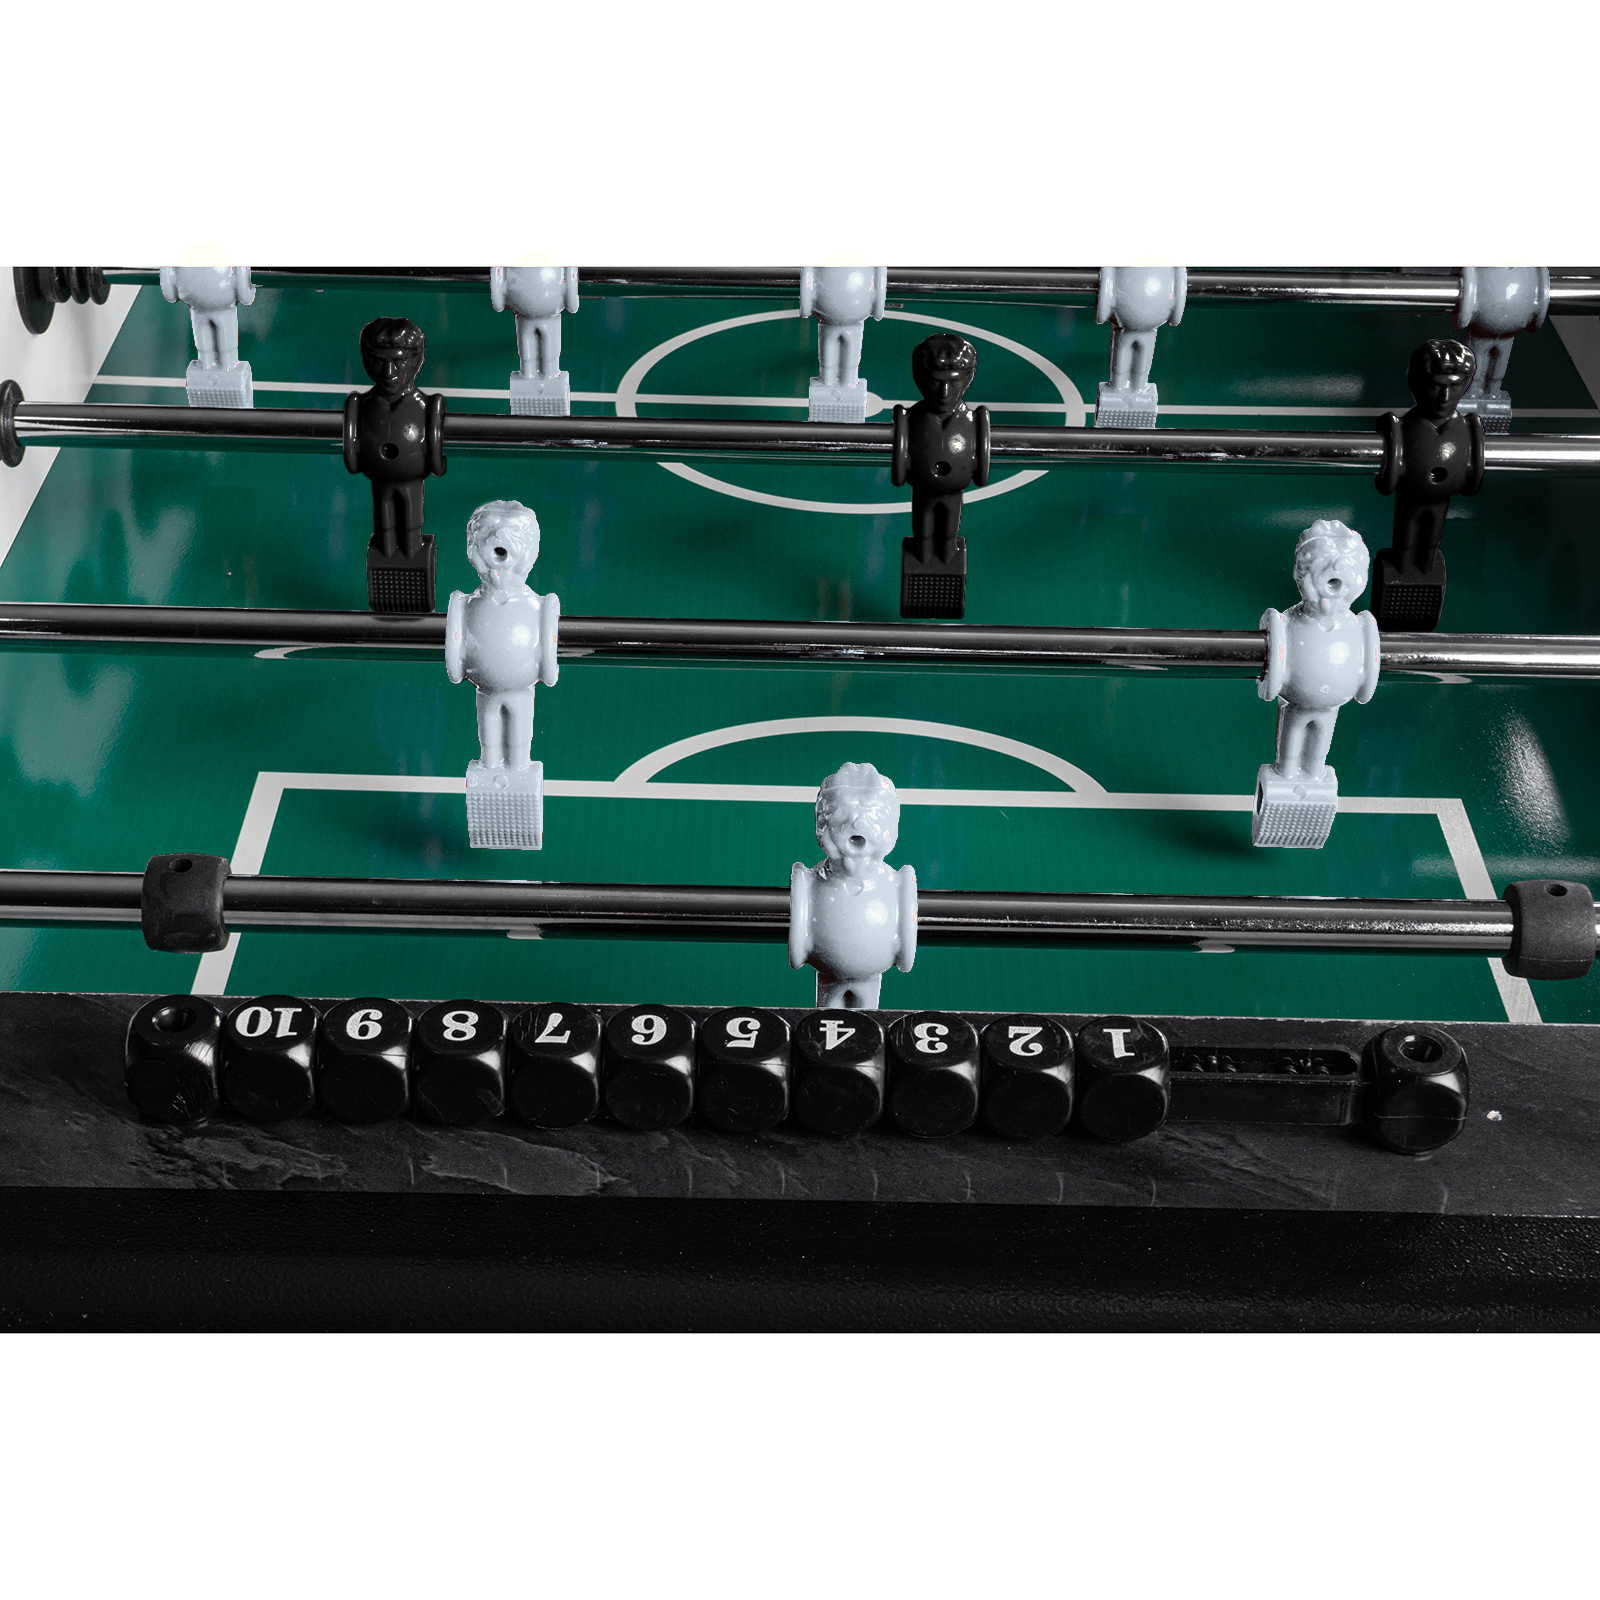 Fußball Tischkicker Design Schwarz grünes Spielfeld Figuren Schwarz Grau 80kg 